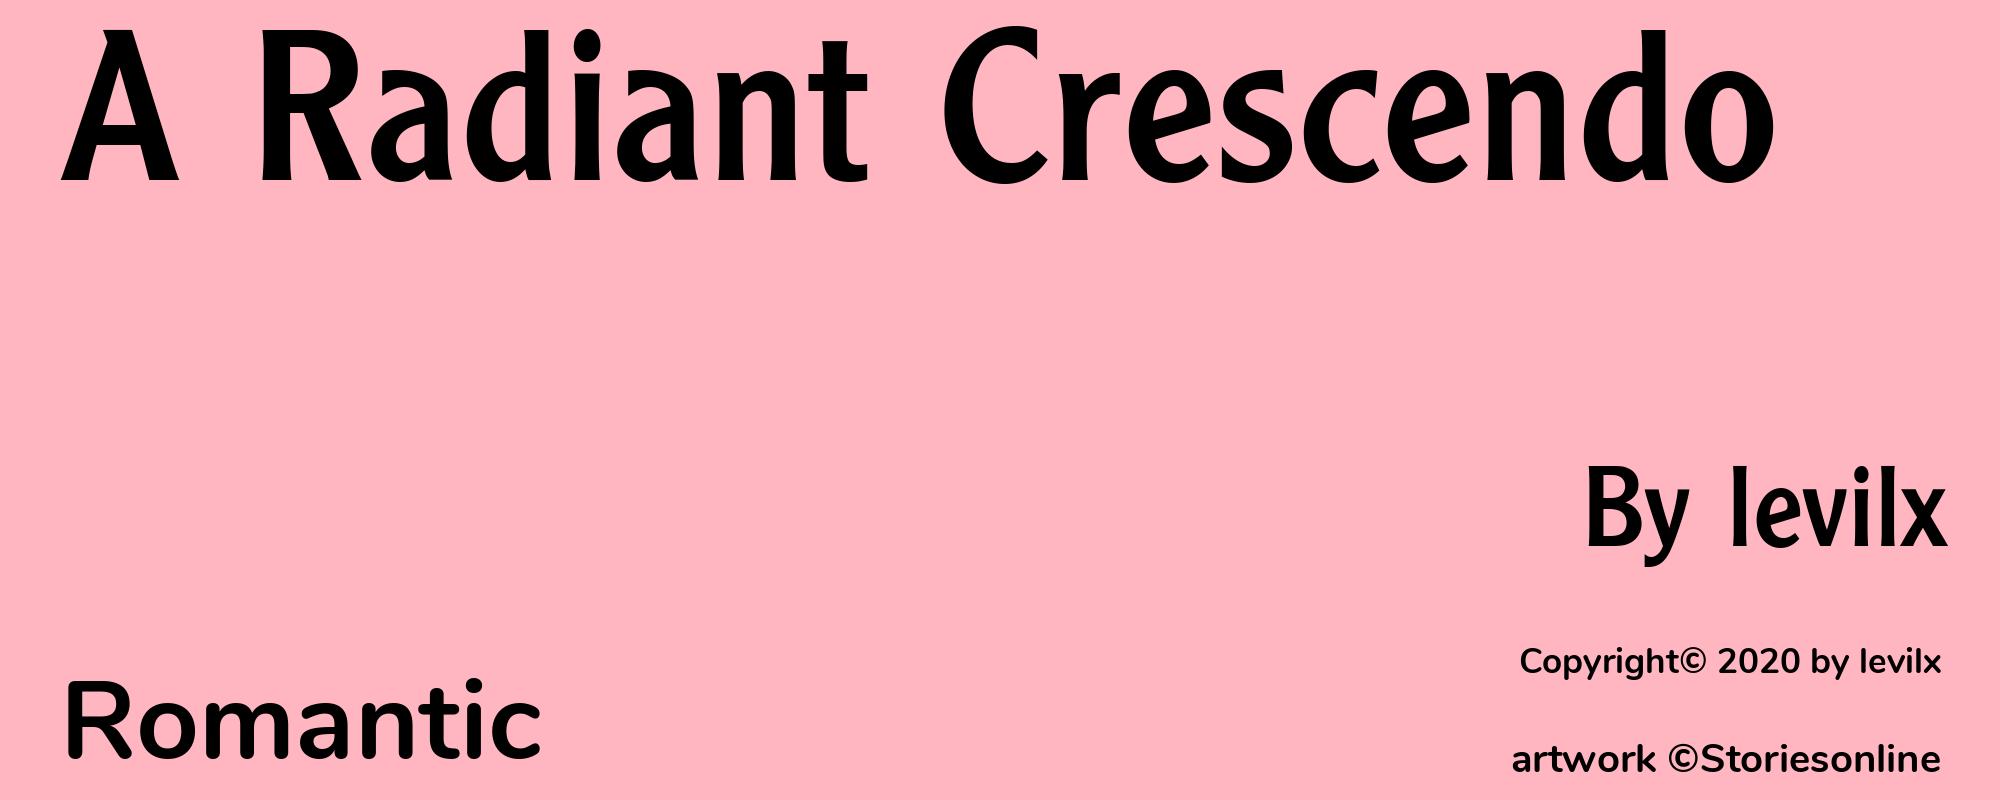 A Radiant Crescendo - Cover